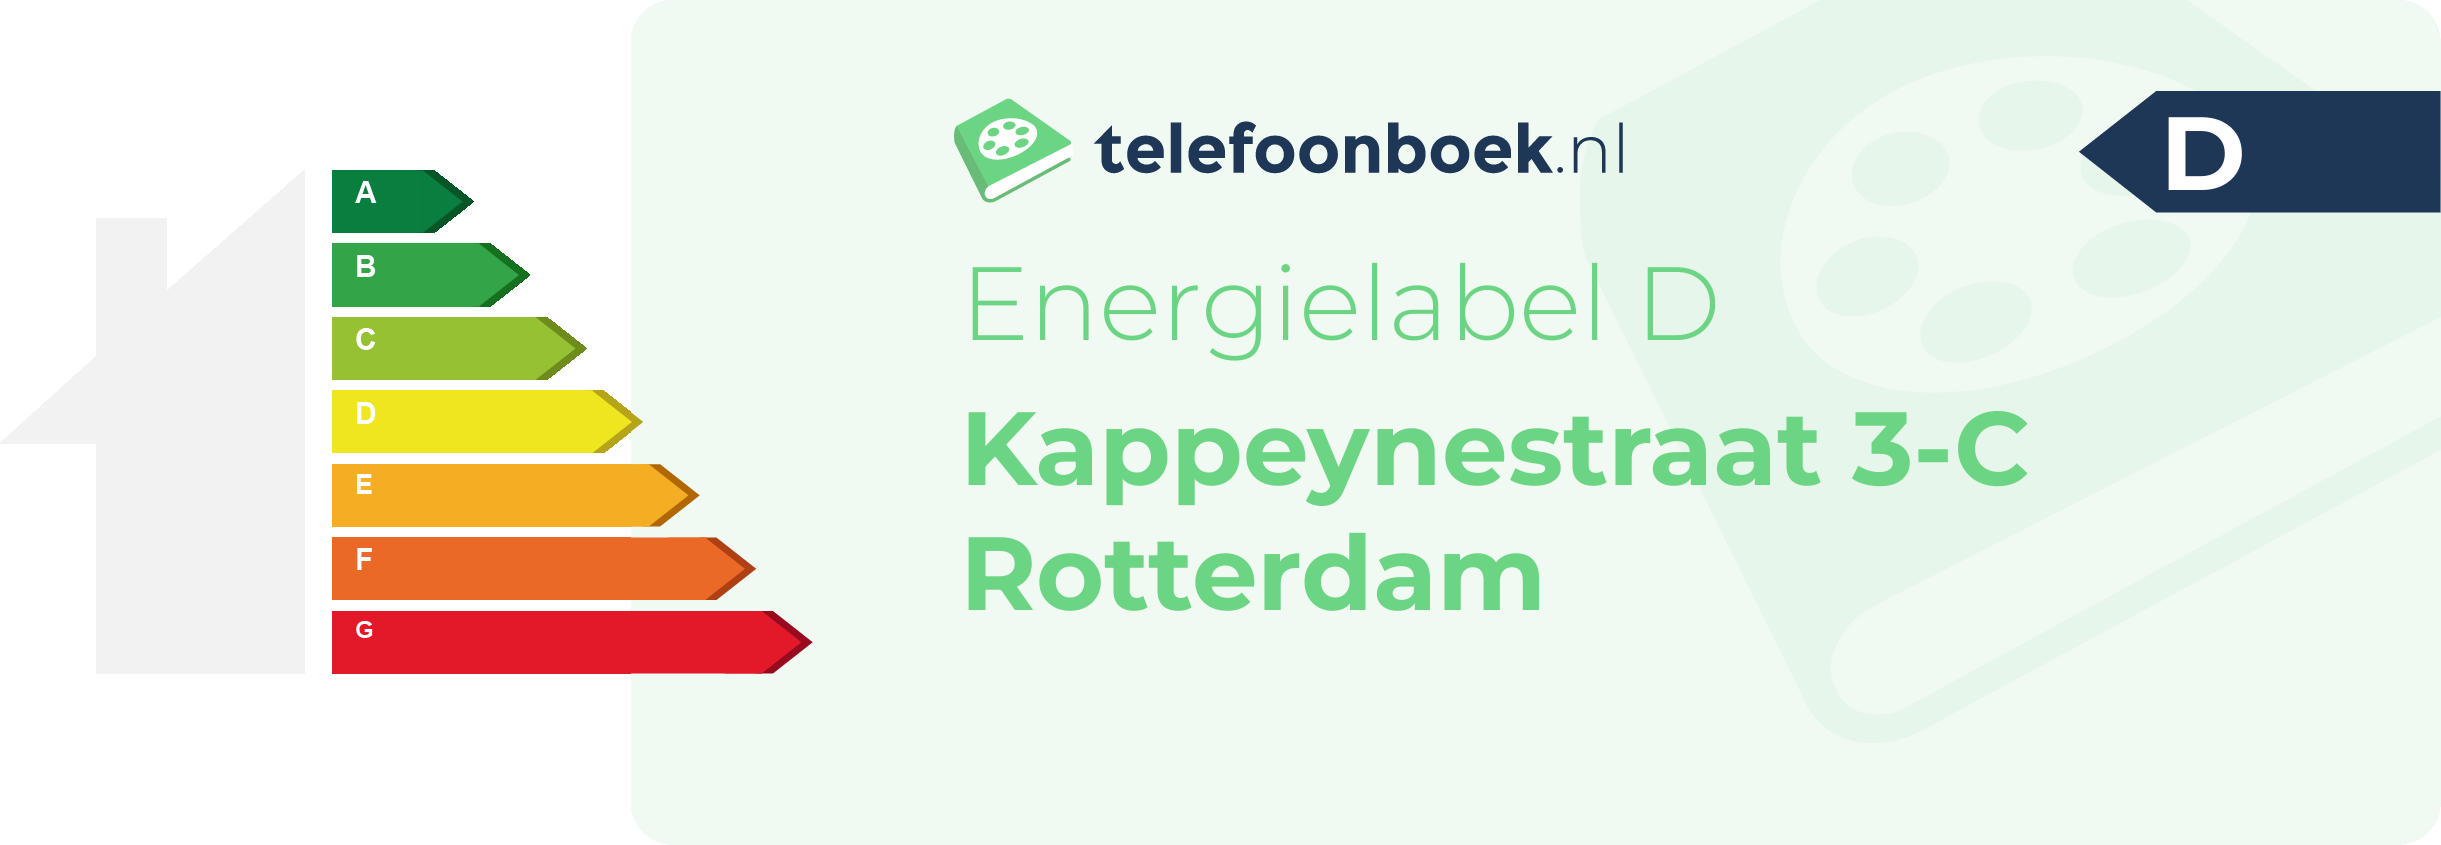 Energielabel Kappeynestraat 3-C Rotterdam